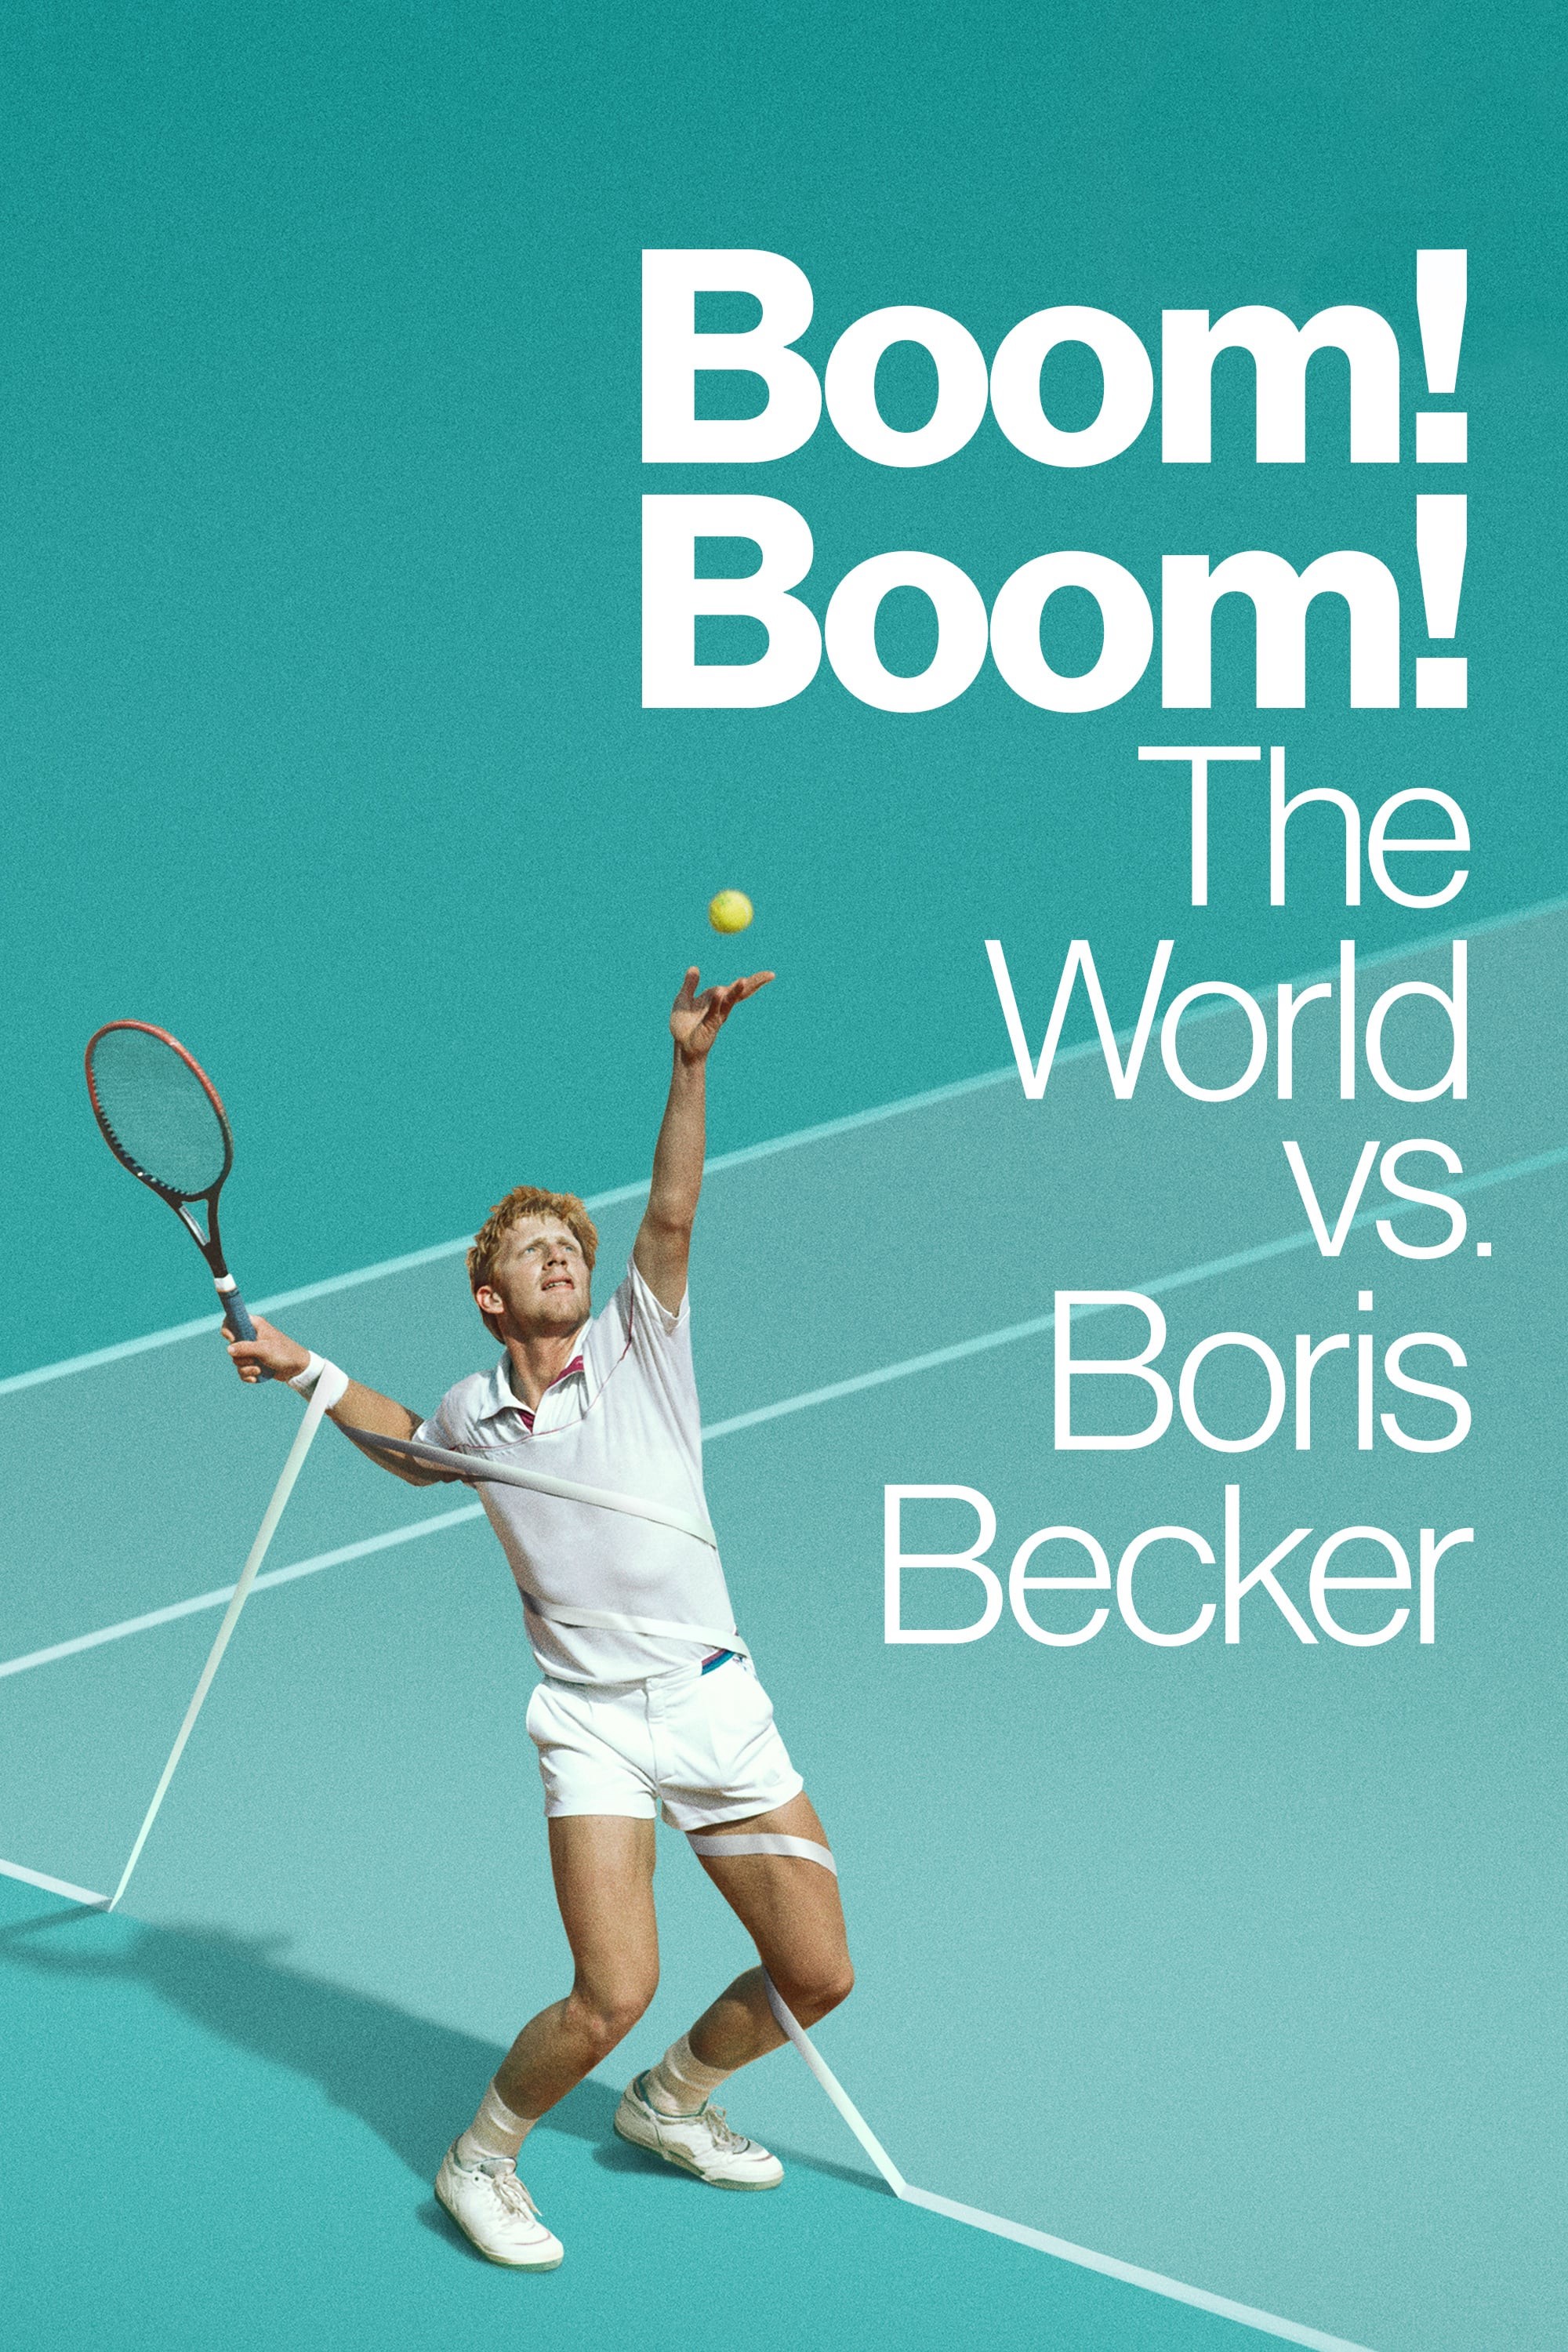 Cuộc Đời Thăng Trầm Của Boris Becker - Cuộc Đời Thăng Trầm Của Boris Becker